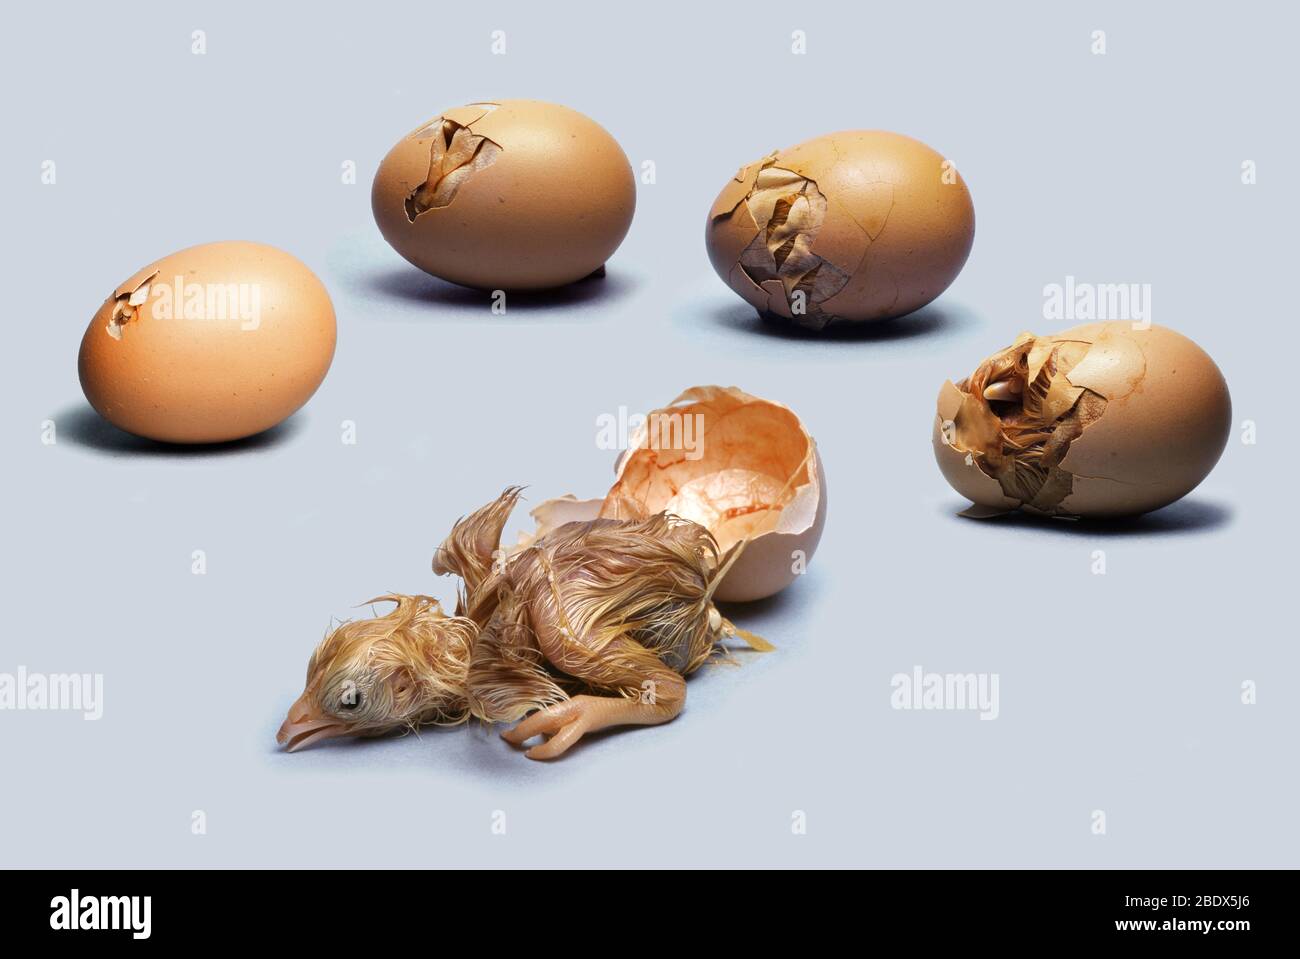 Hatching eggs. Яйцо вылупляется. Вылупленное яйцо. Птица вылупляется из яйца. Зайцы вылупляются из яиц.